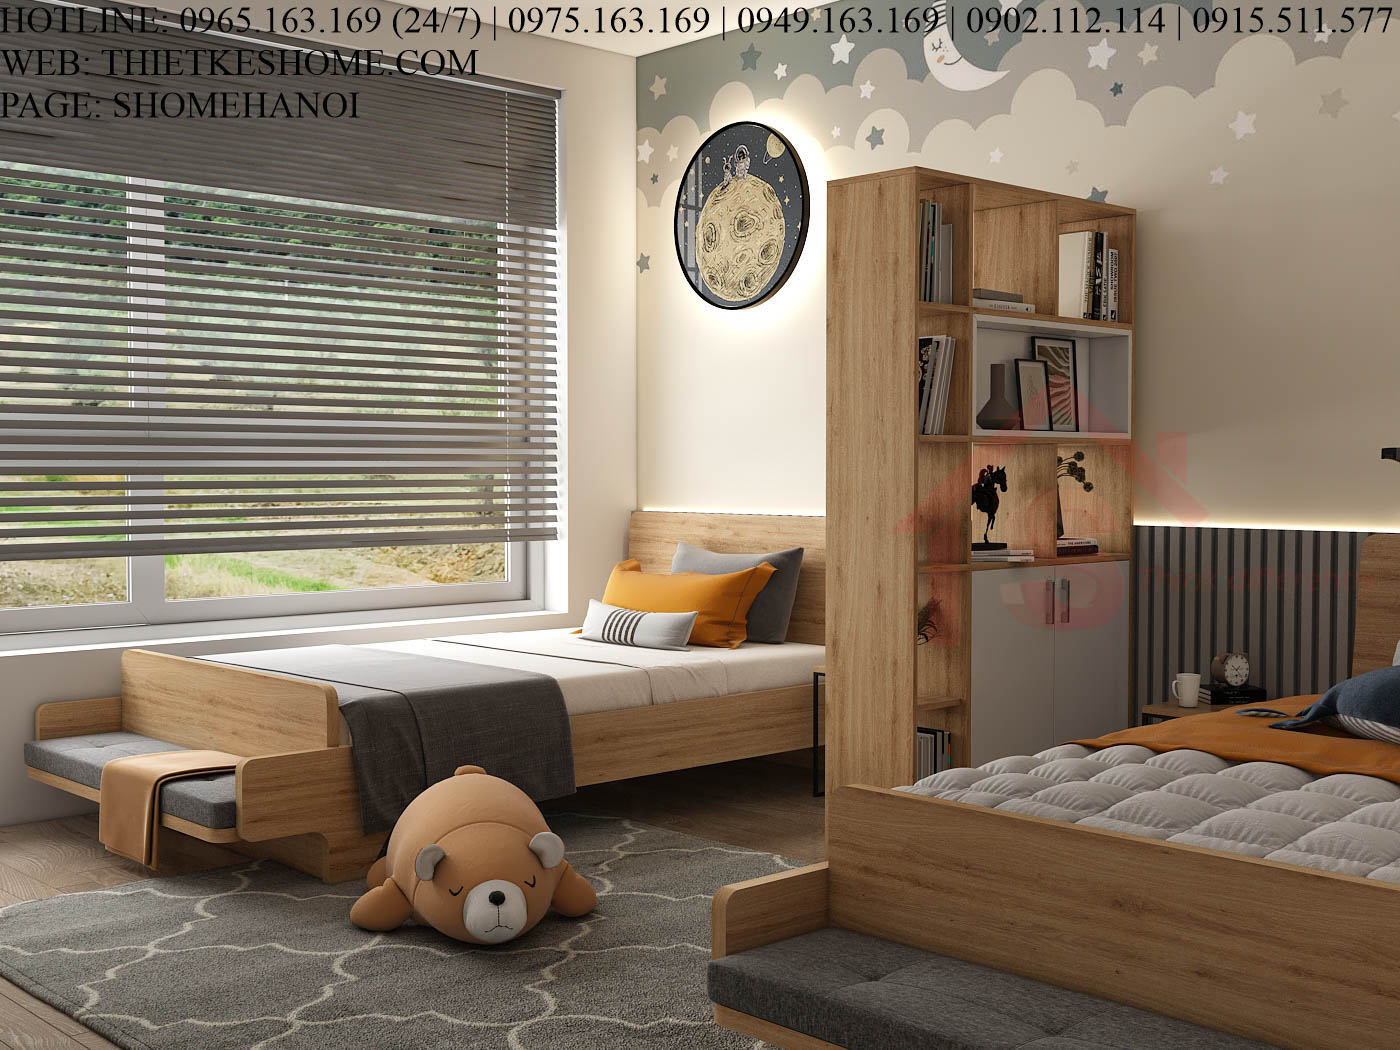 S HOME Combo mẫu nội thất phòng ngủ cho bé đẹp hiện đại tiện dụng SHOME6806